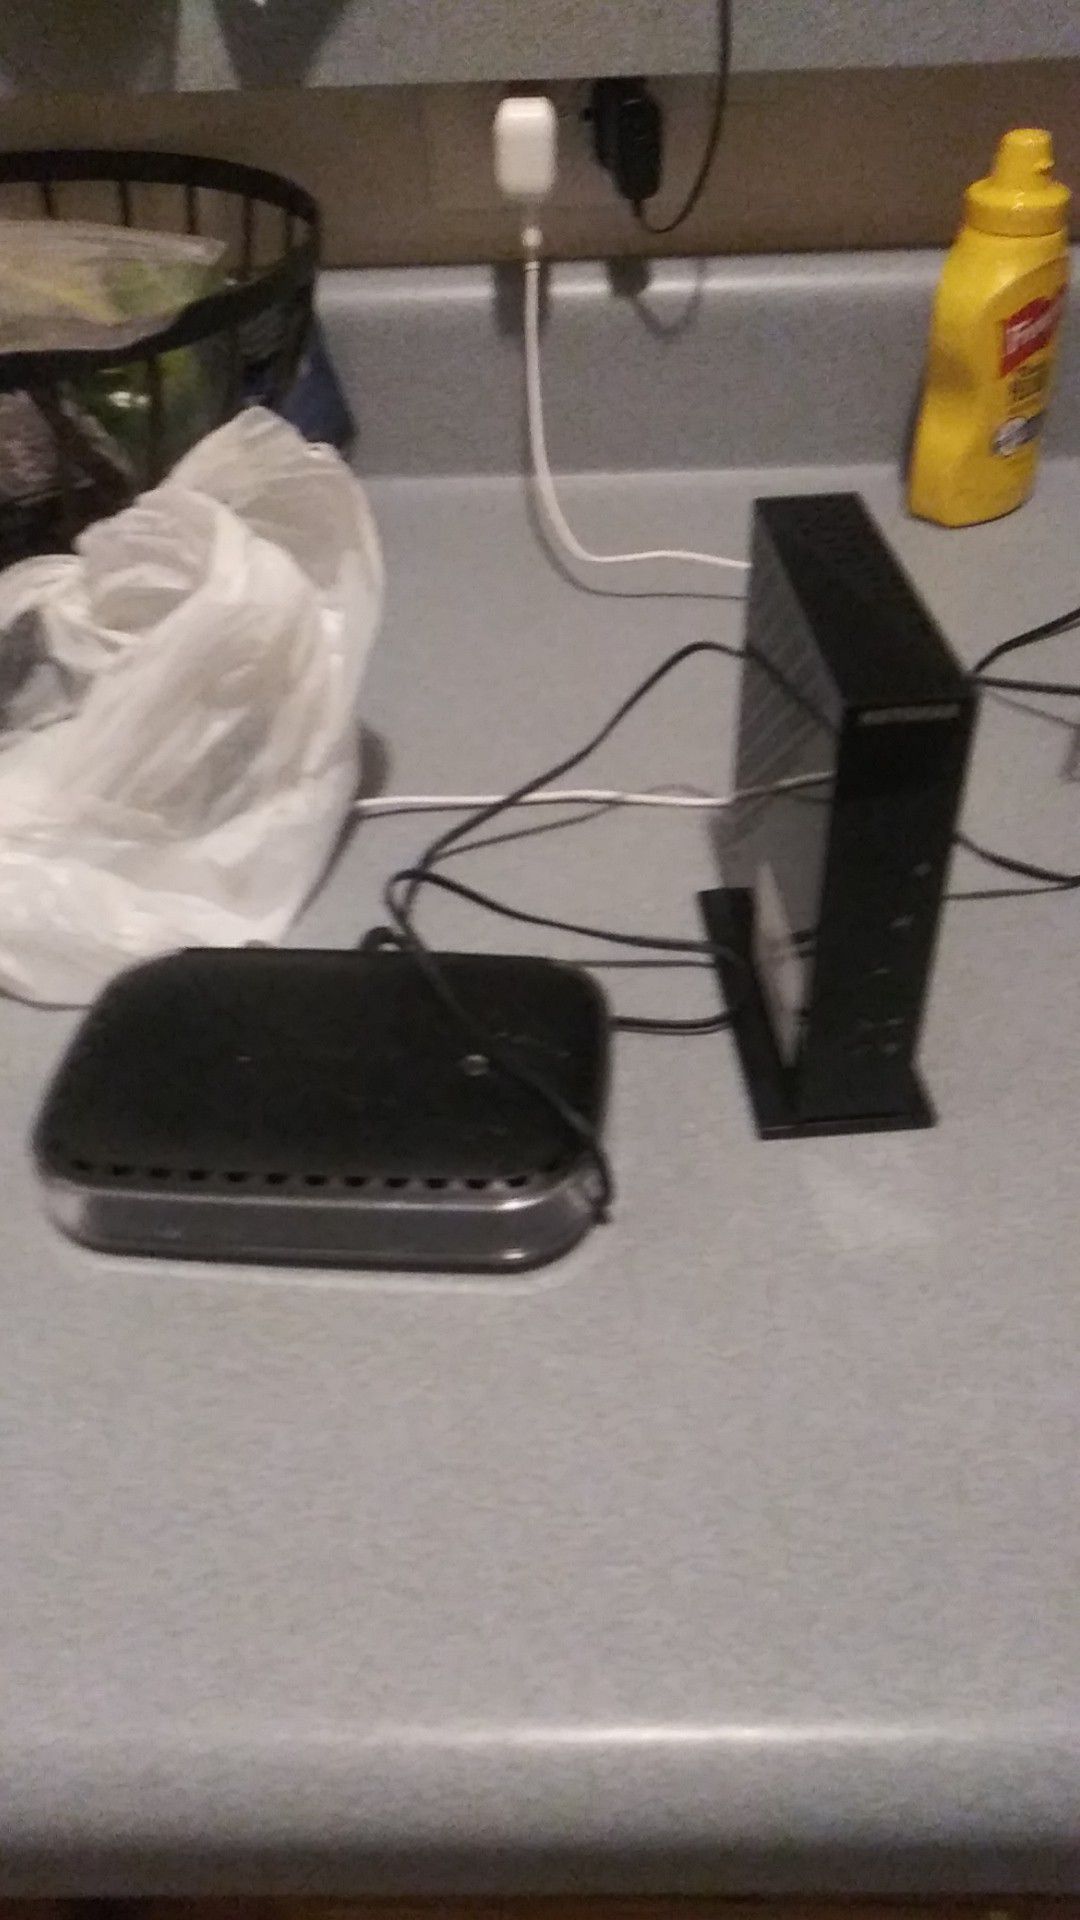 Netgear modem and router 25$